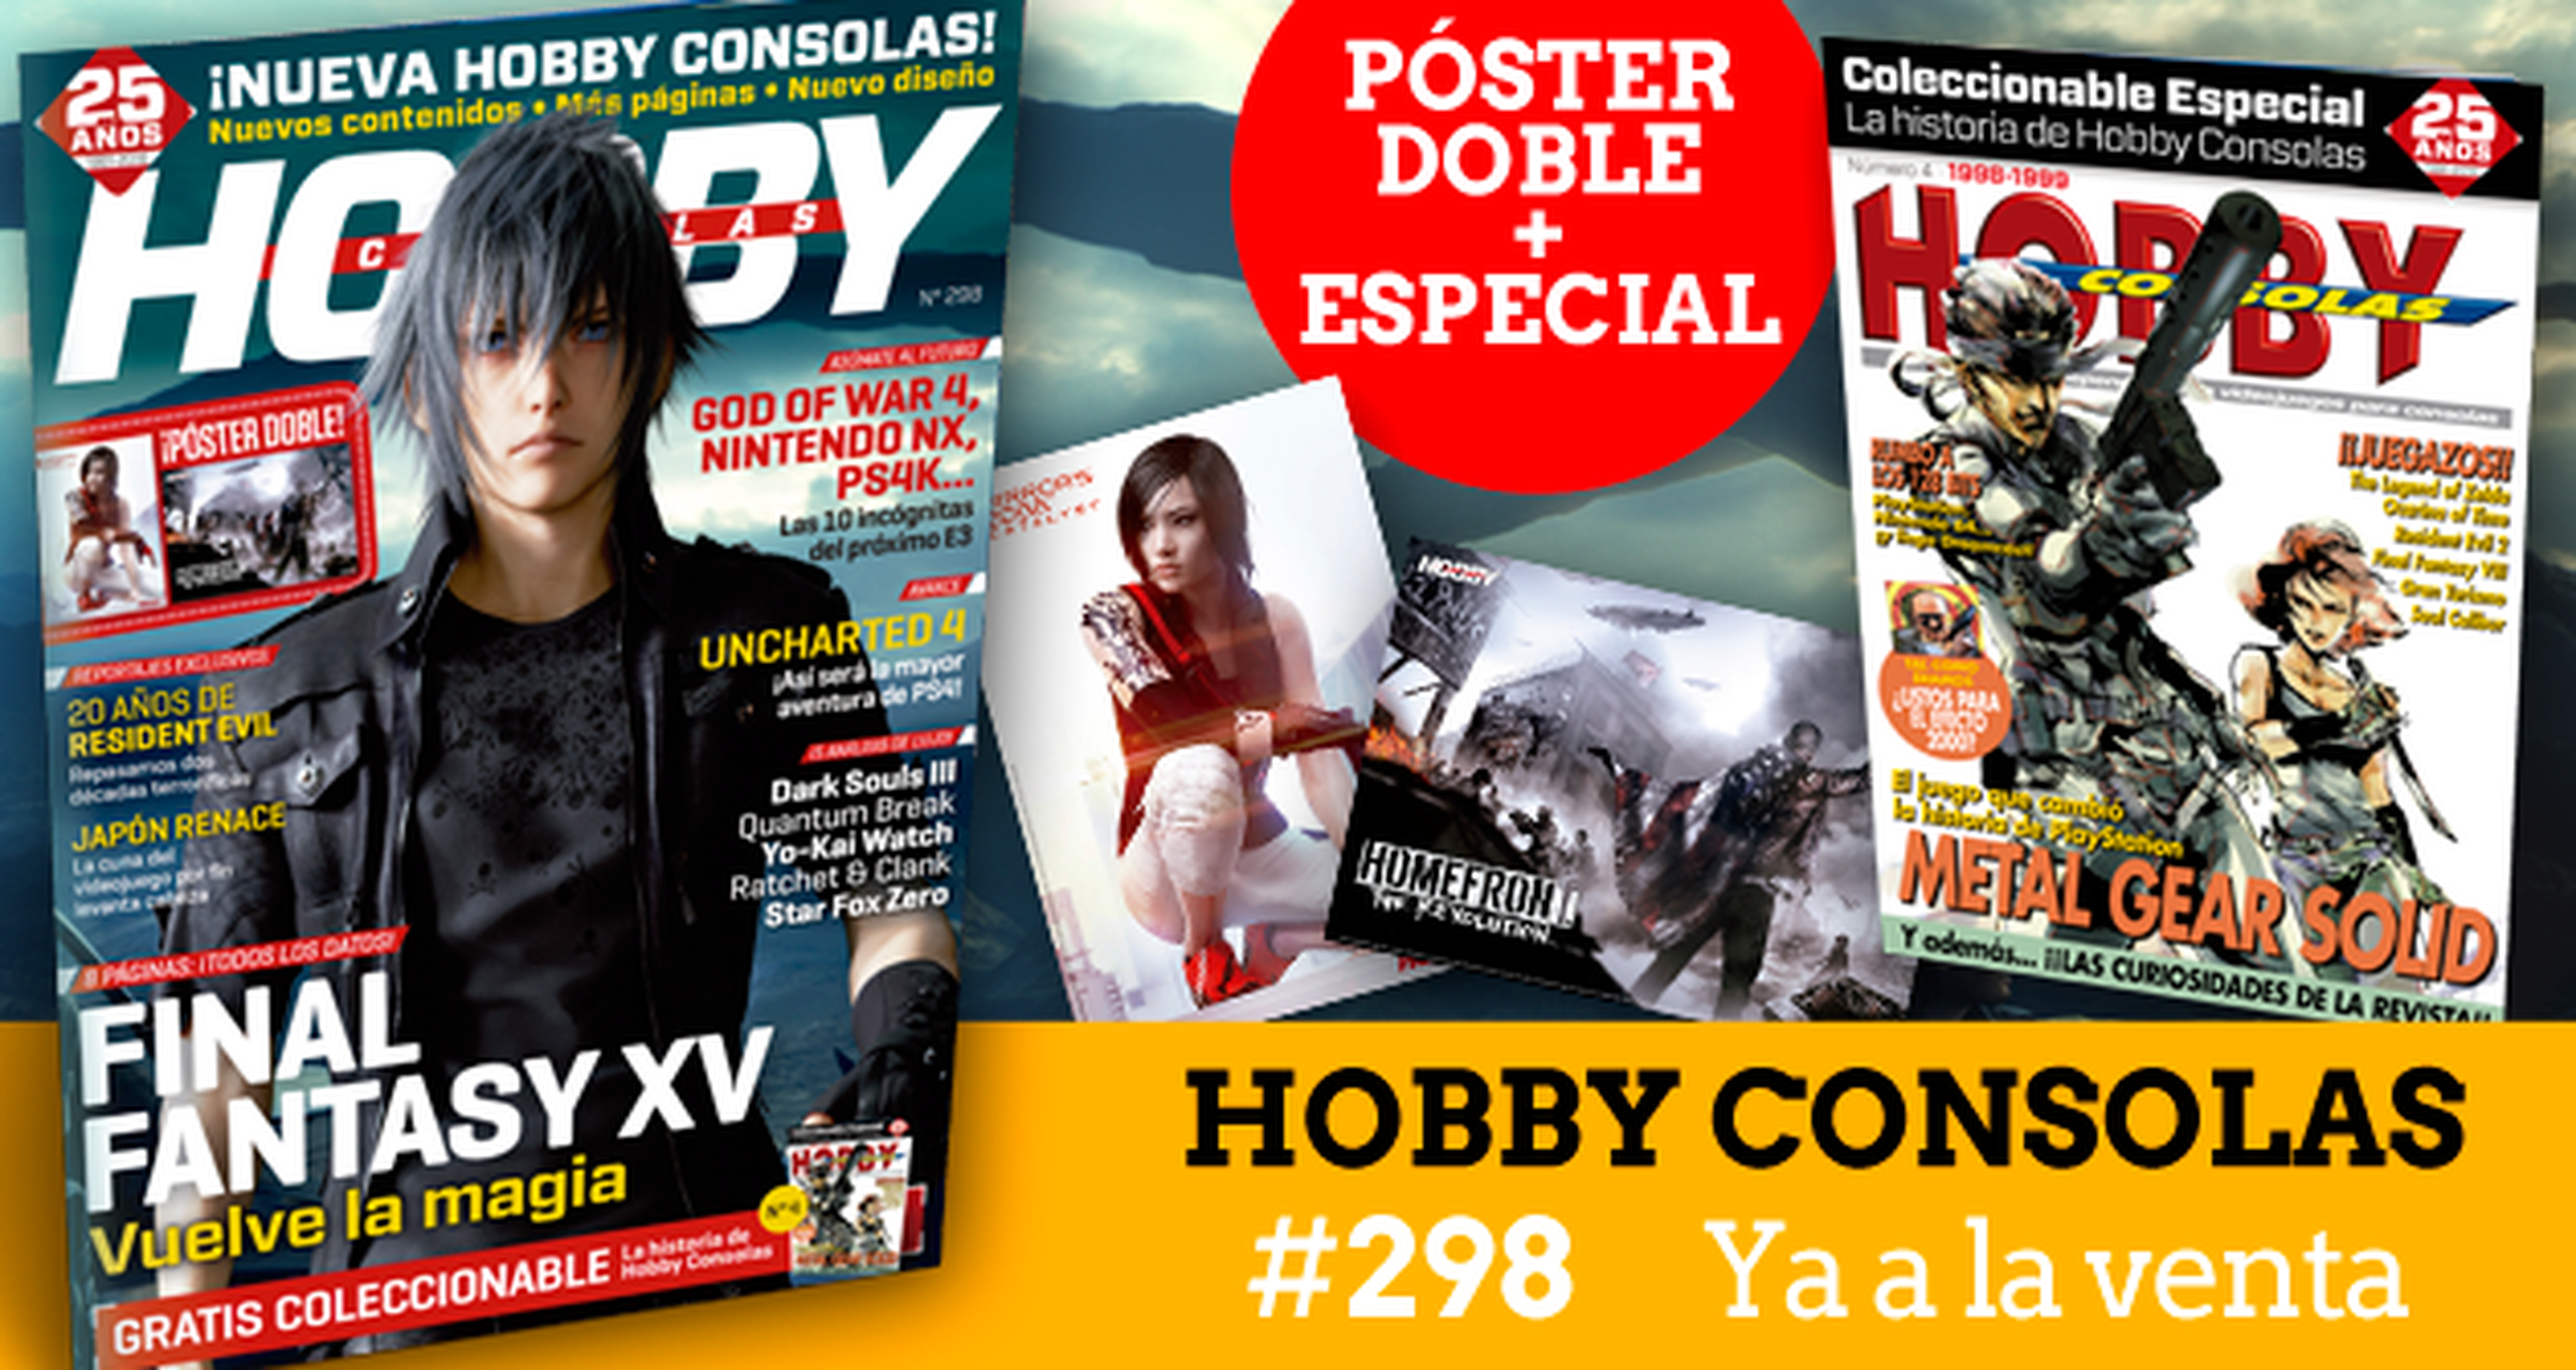 Hobby Consolas 298 ya a la venta. ¡Vuelve la magia con Final Fantasy XV!